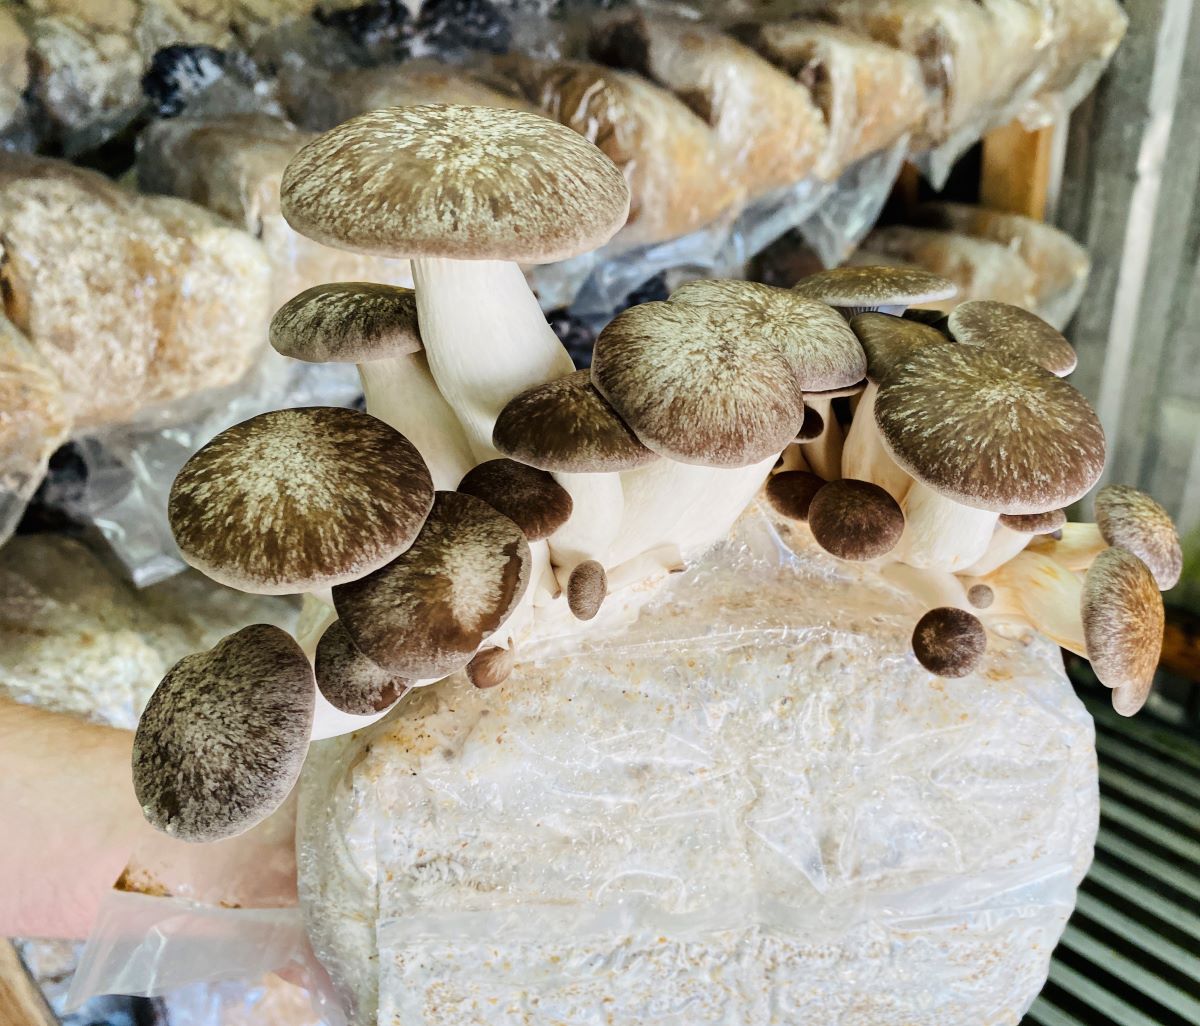 Columbia Mushroom Company Black Oyster Mushrooms